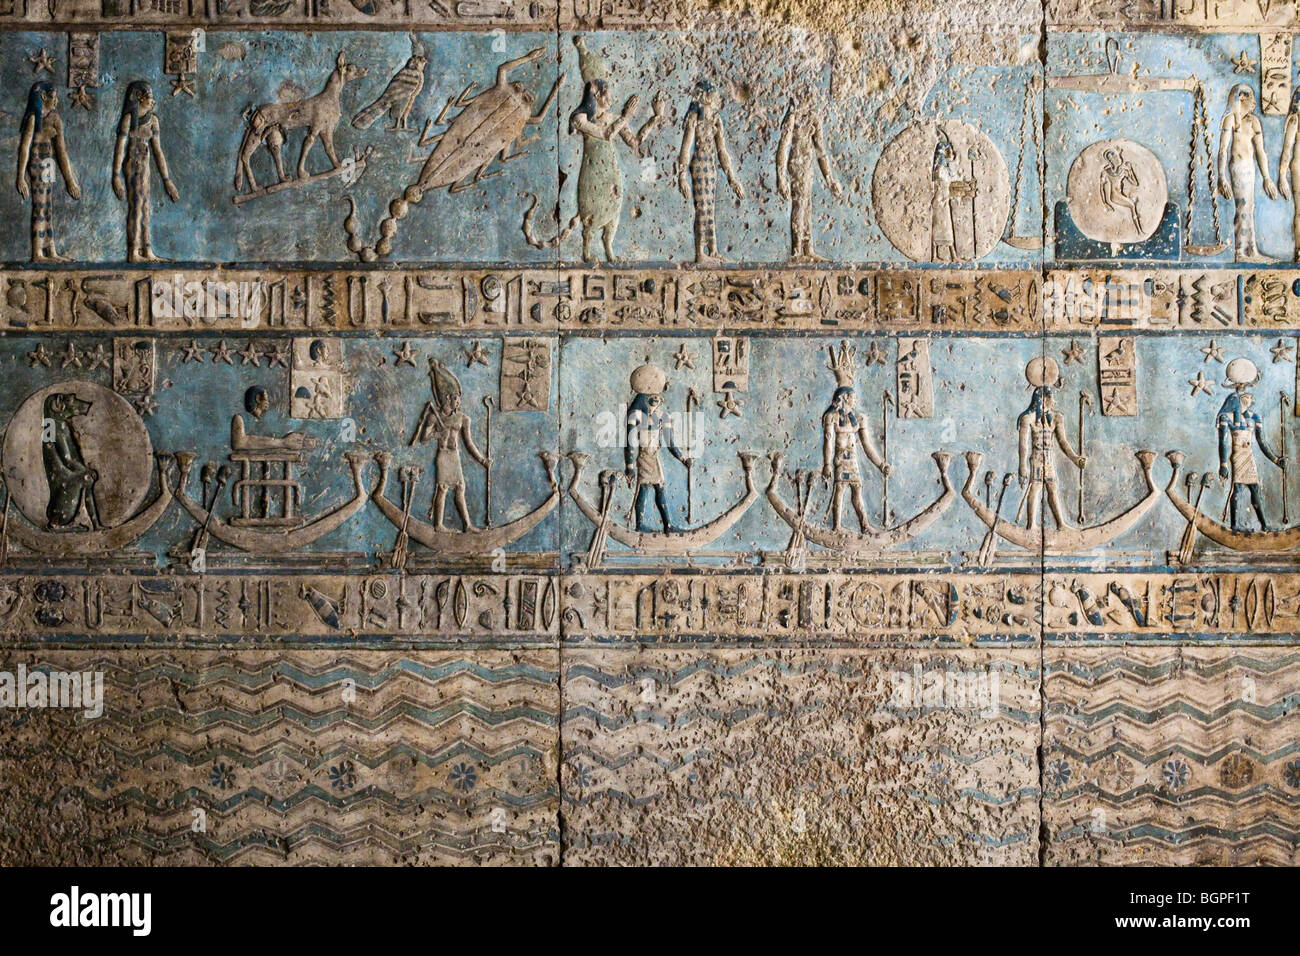 Die frisch gereinigte Decke mit astronomischen Kulissen der ptolemäischen Tempel der Hathor in Dendera, Niltal, Ägypten Stockfoto